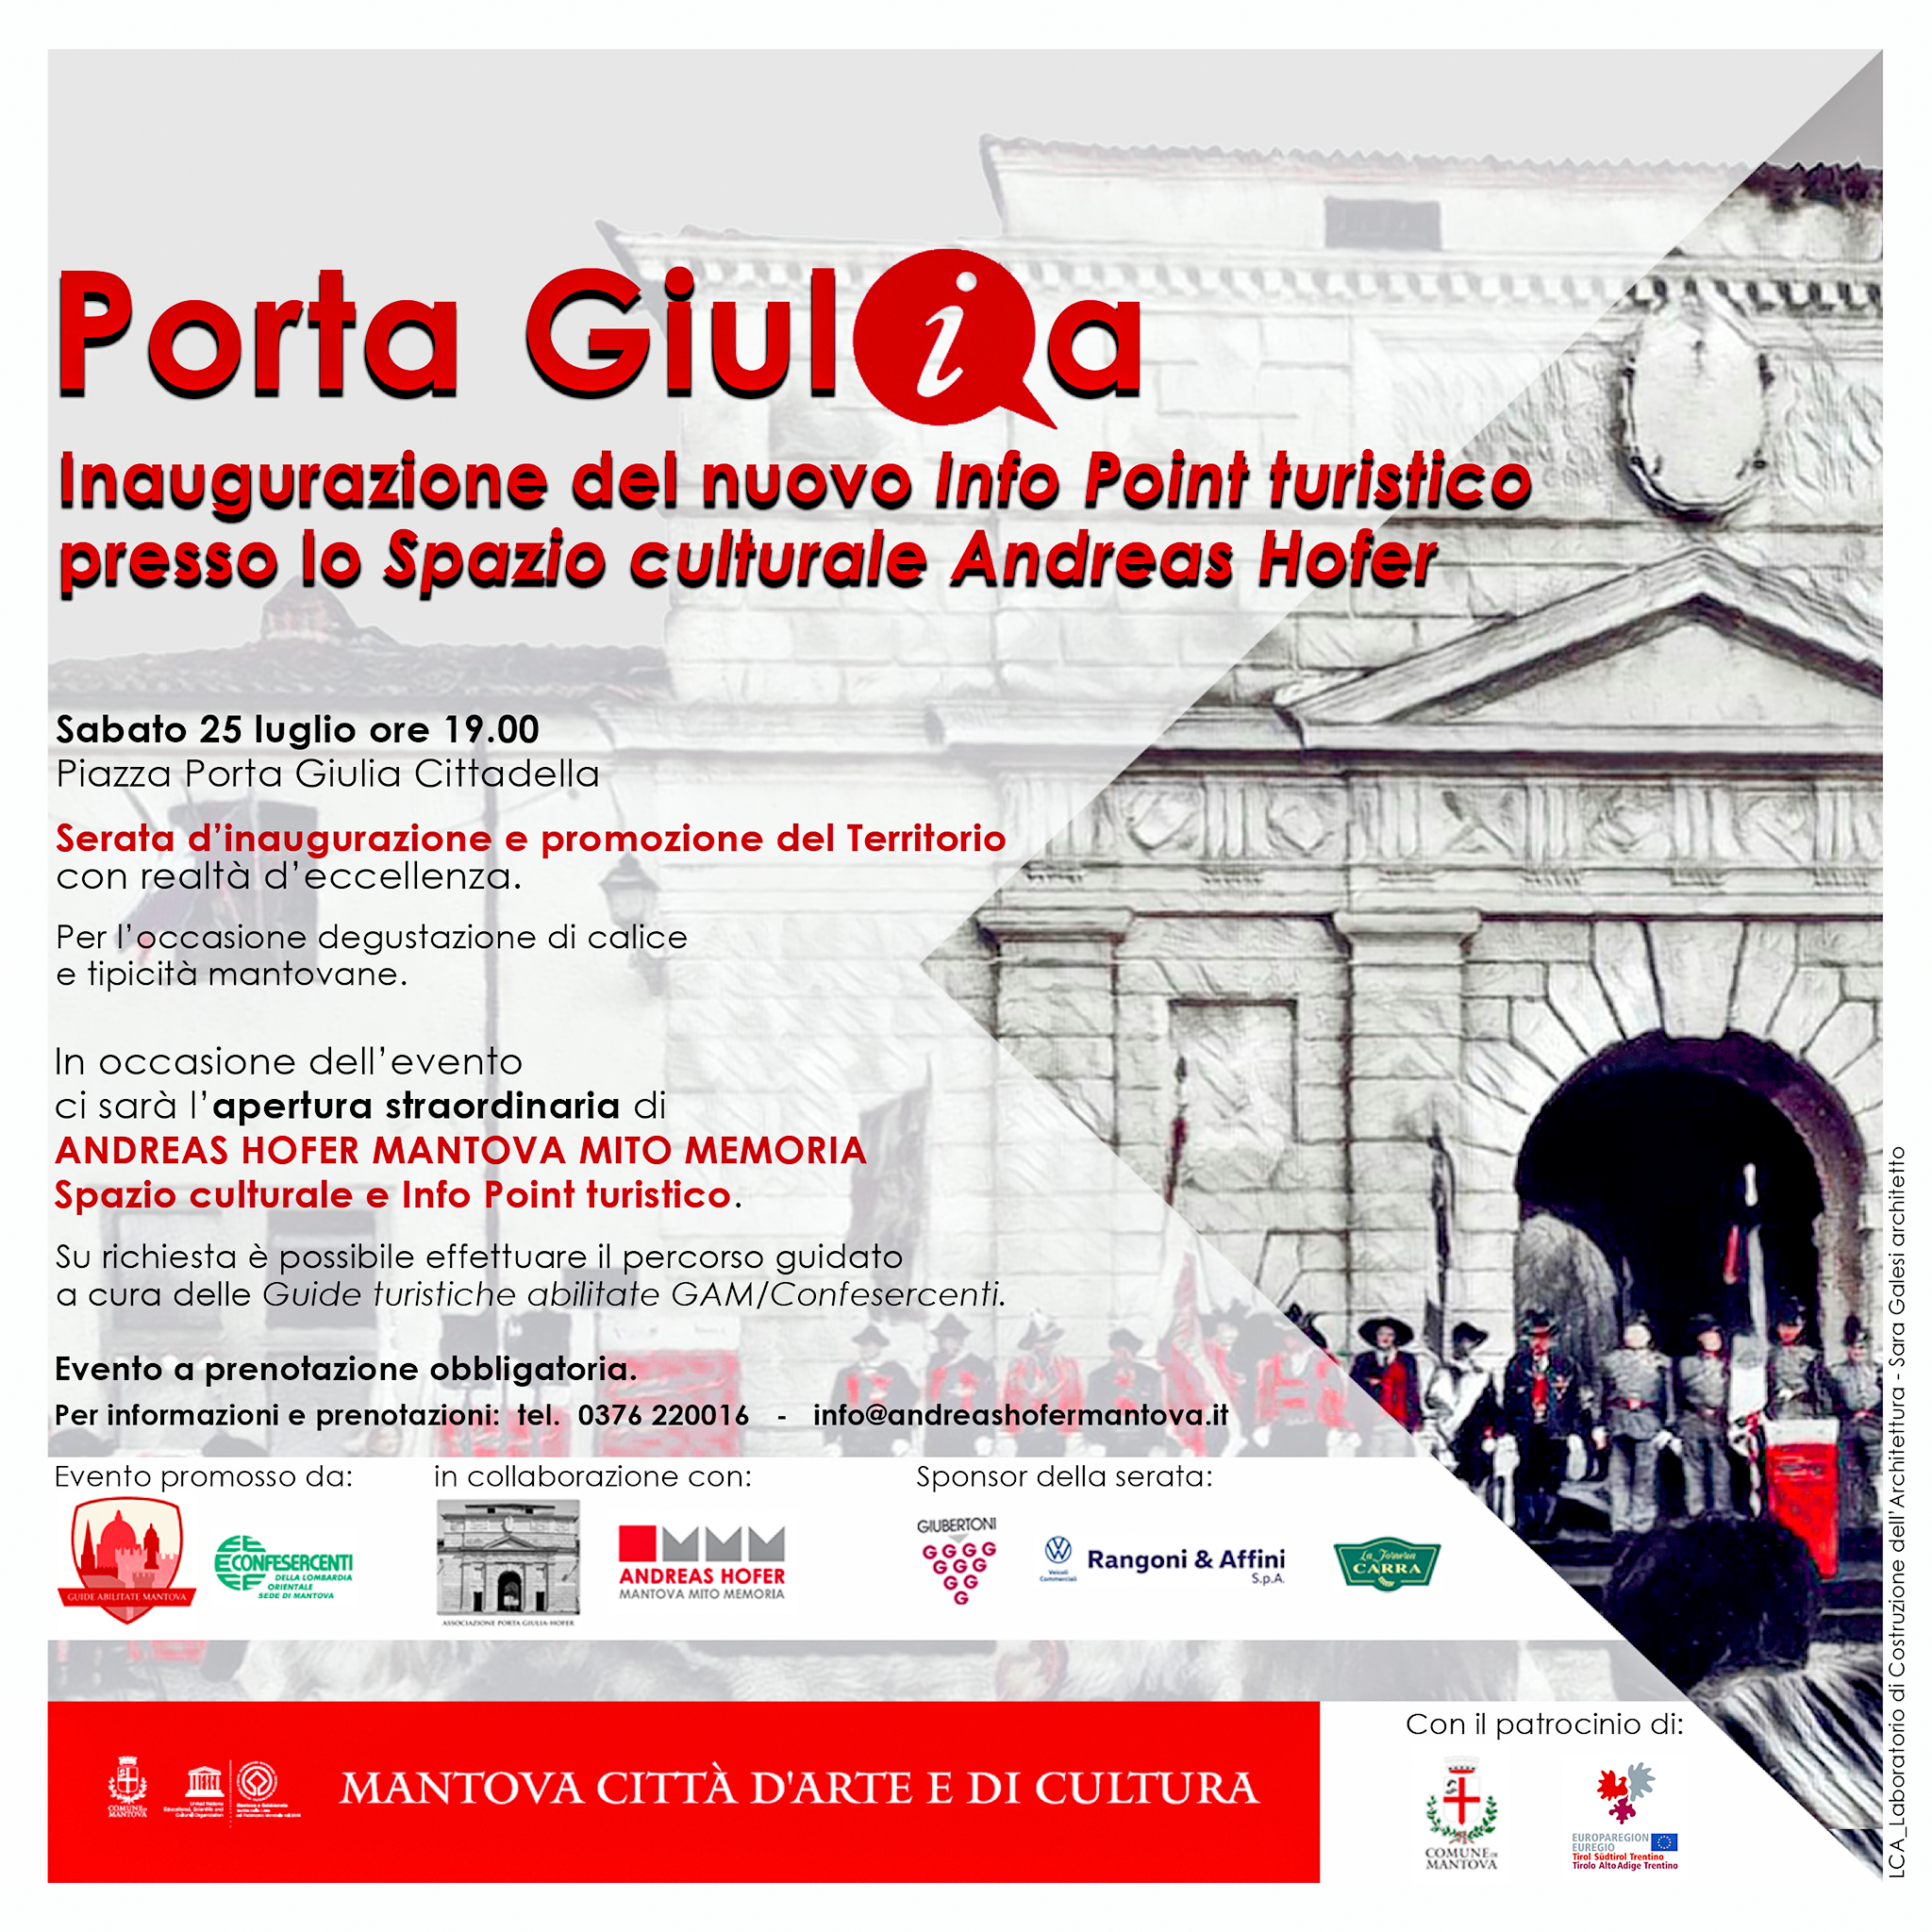 Porta Giulia ist nun auch ein Tourismus-Infopoint